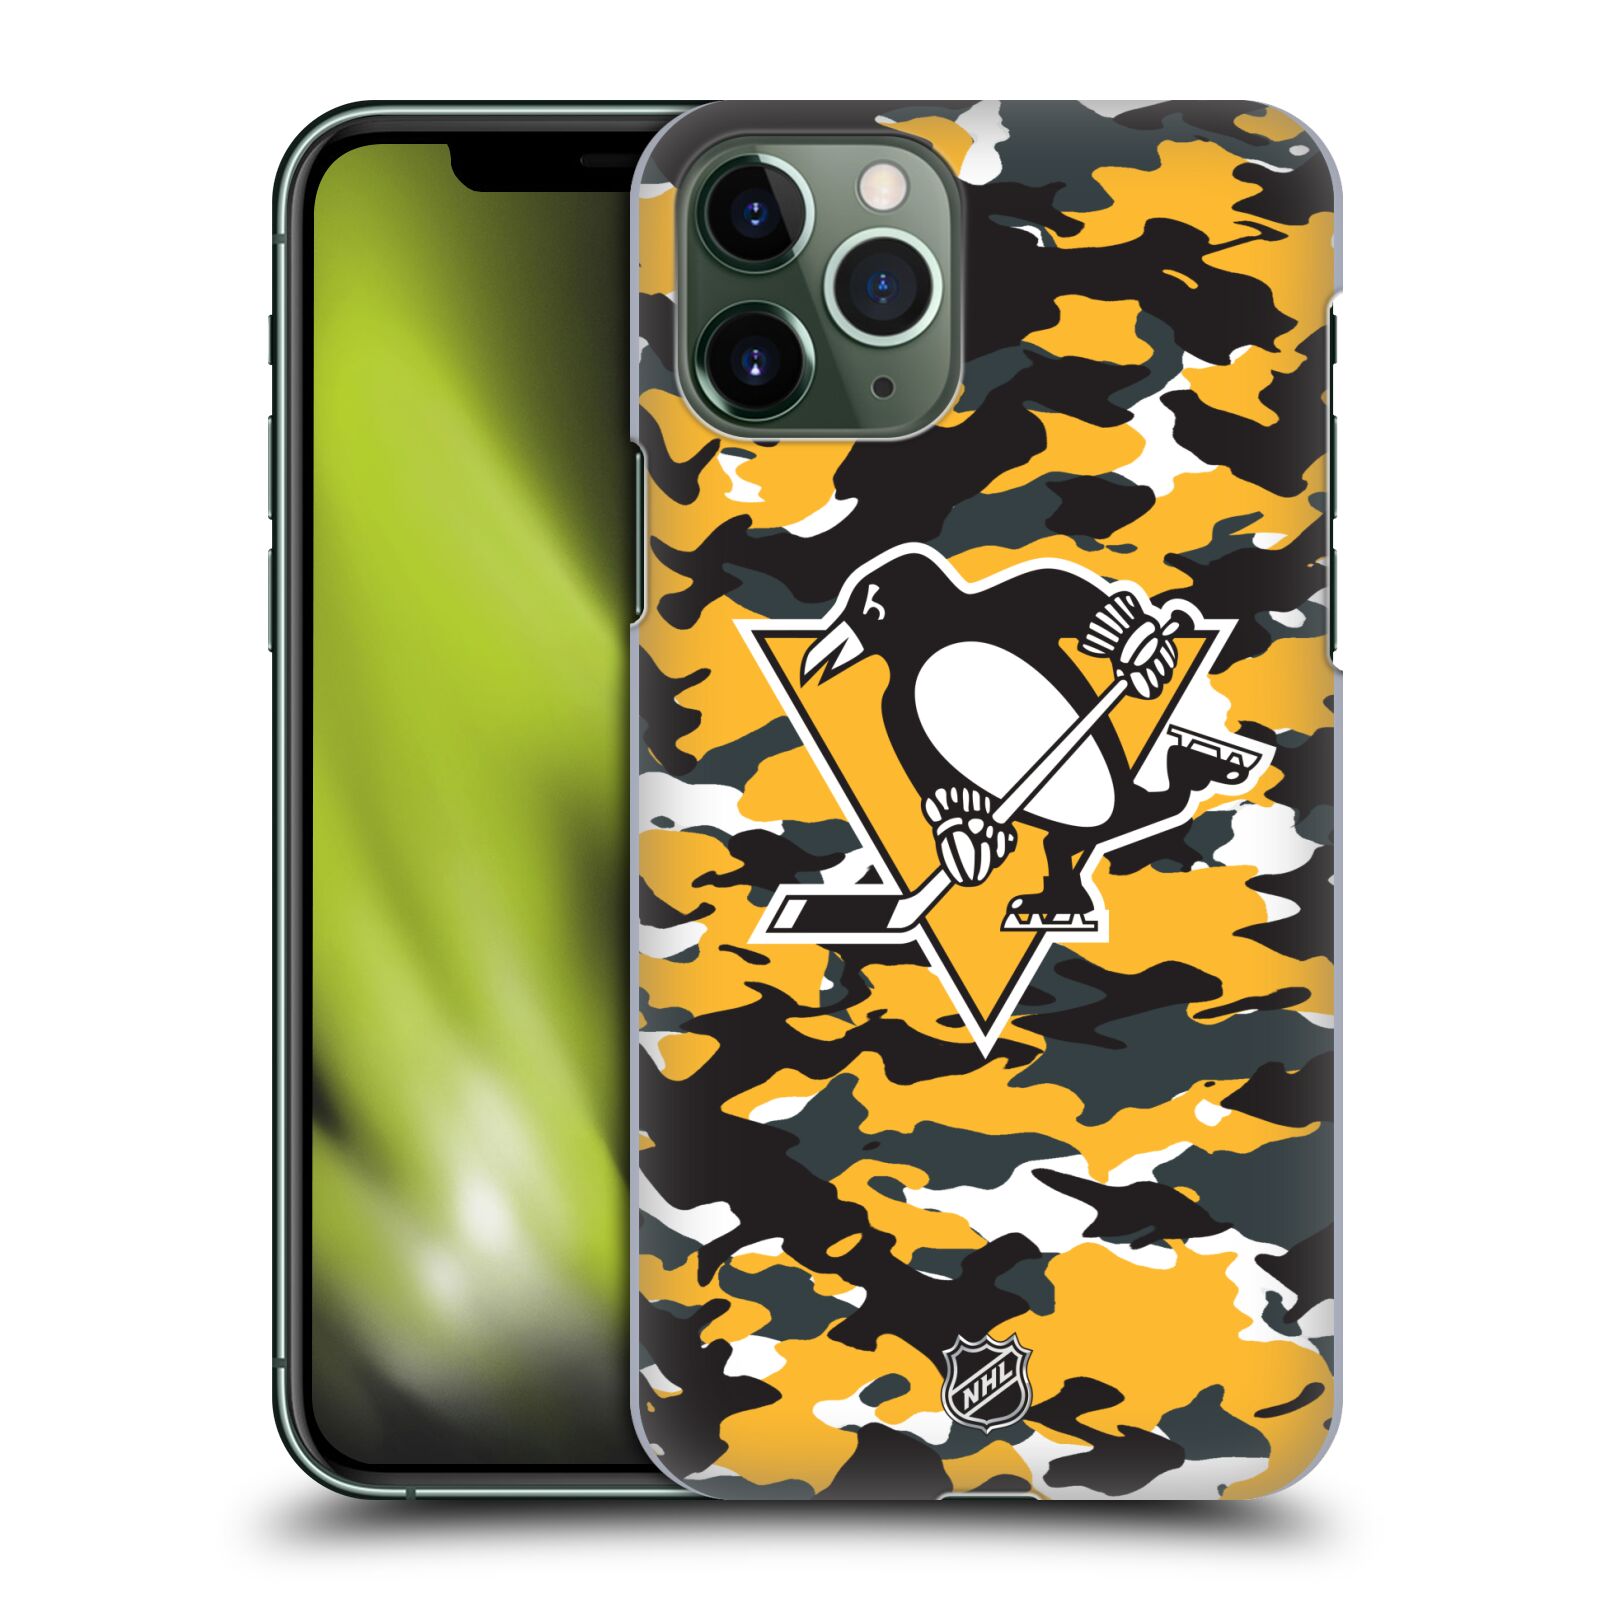 Pouzdro na mobil Apple Iphone 11 PRO - HEAD CASE - Hokej NHL - Pittsburgh Penguins - kamufláž znak